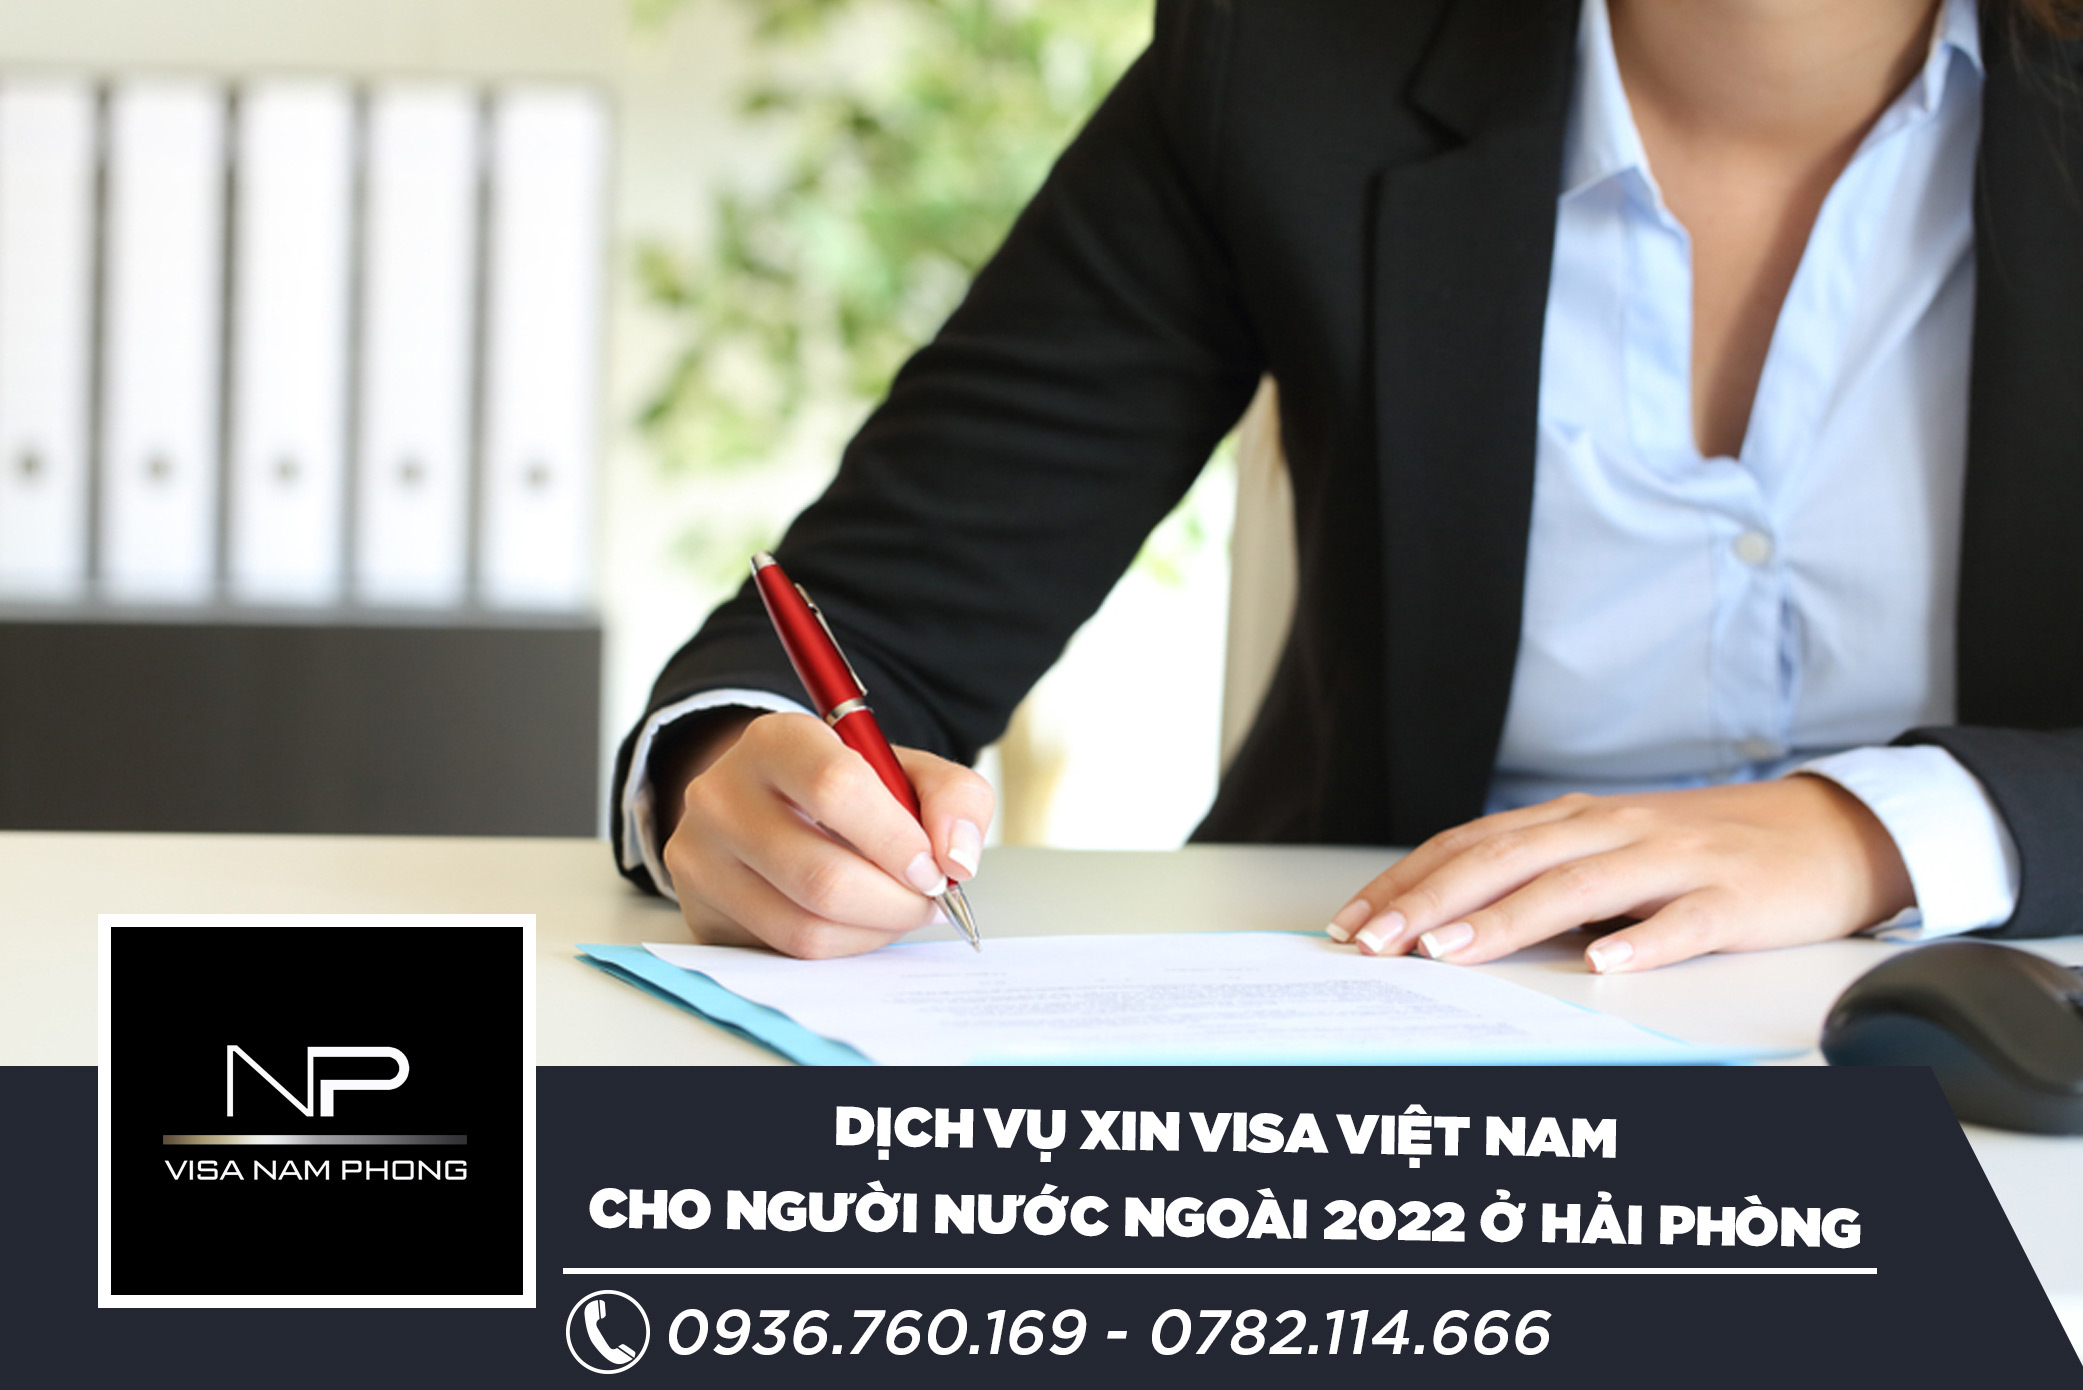 Dịch vụ xin visa Việt Nam cho người nước ngoài 2022 ở Hải Phòng